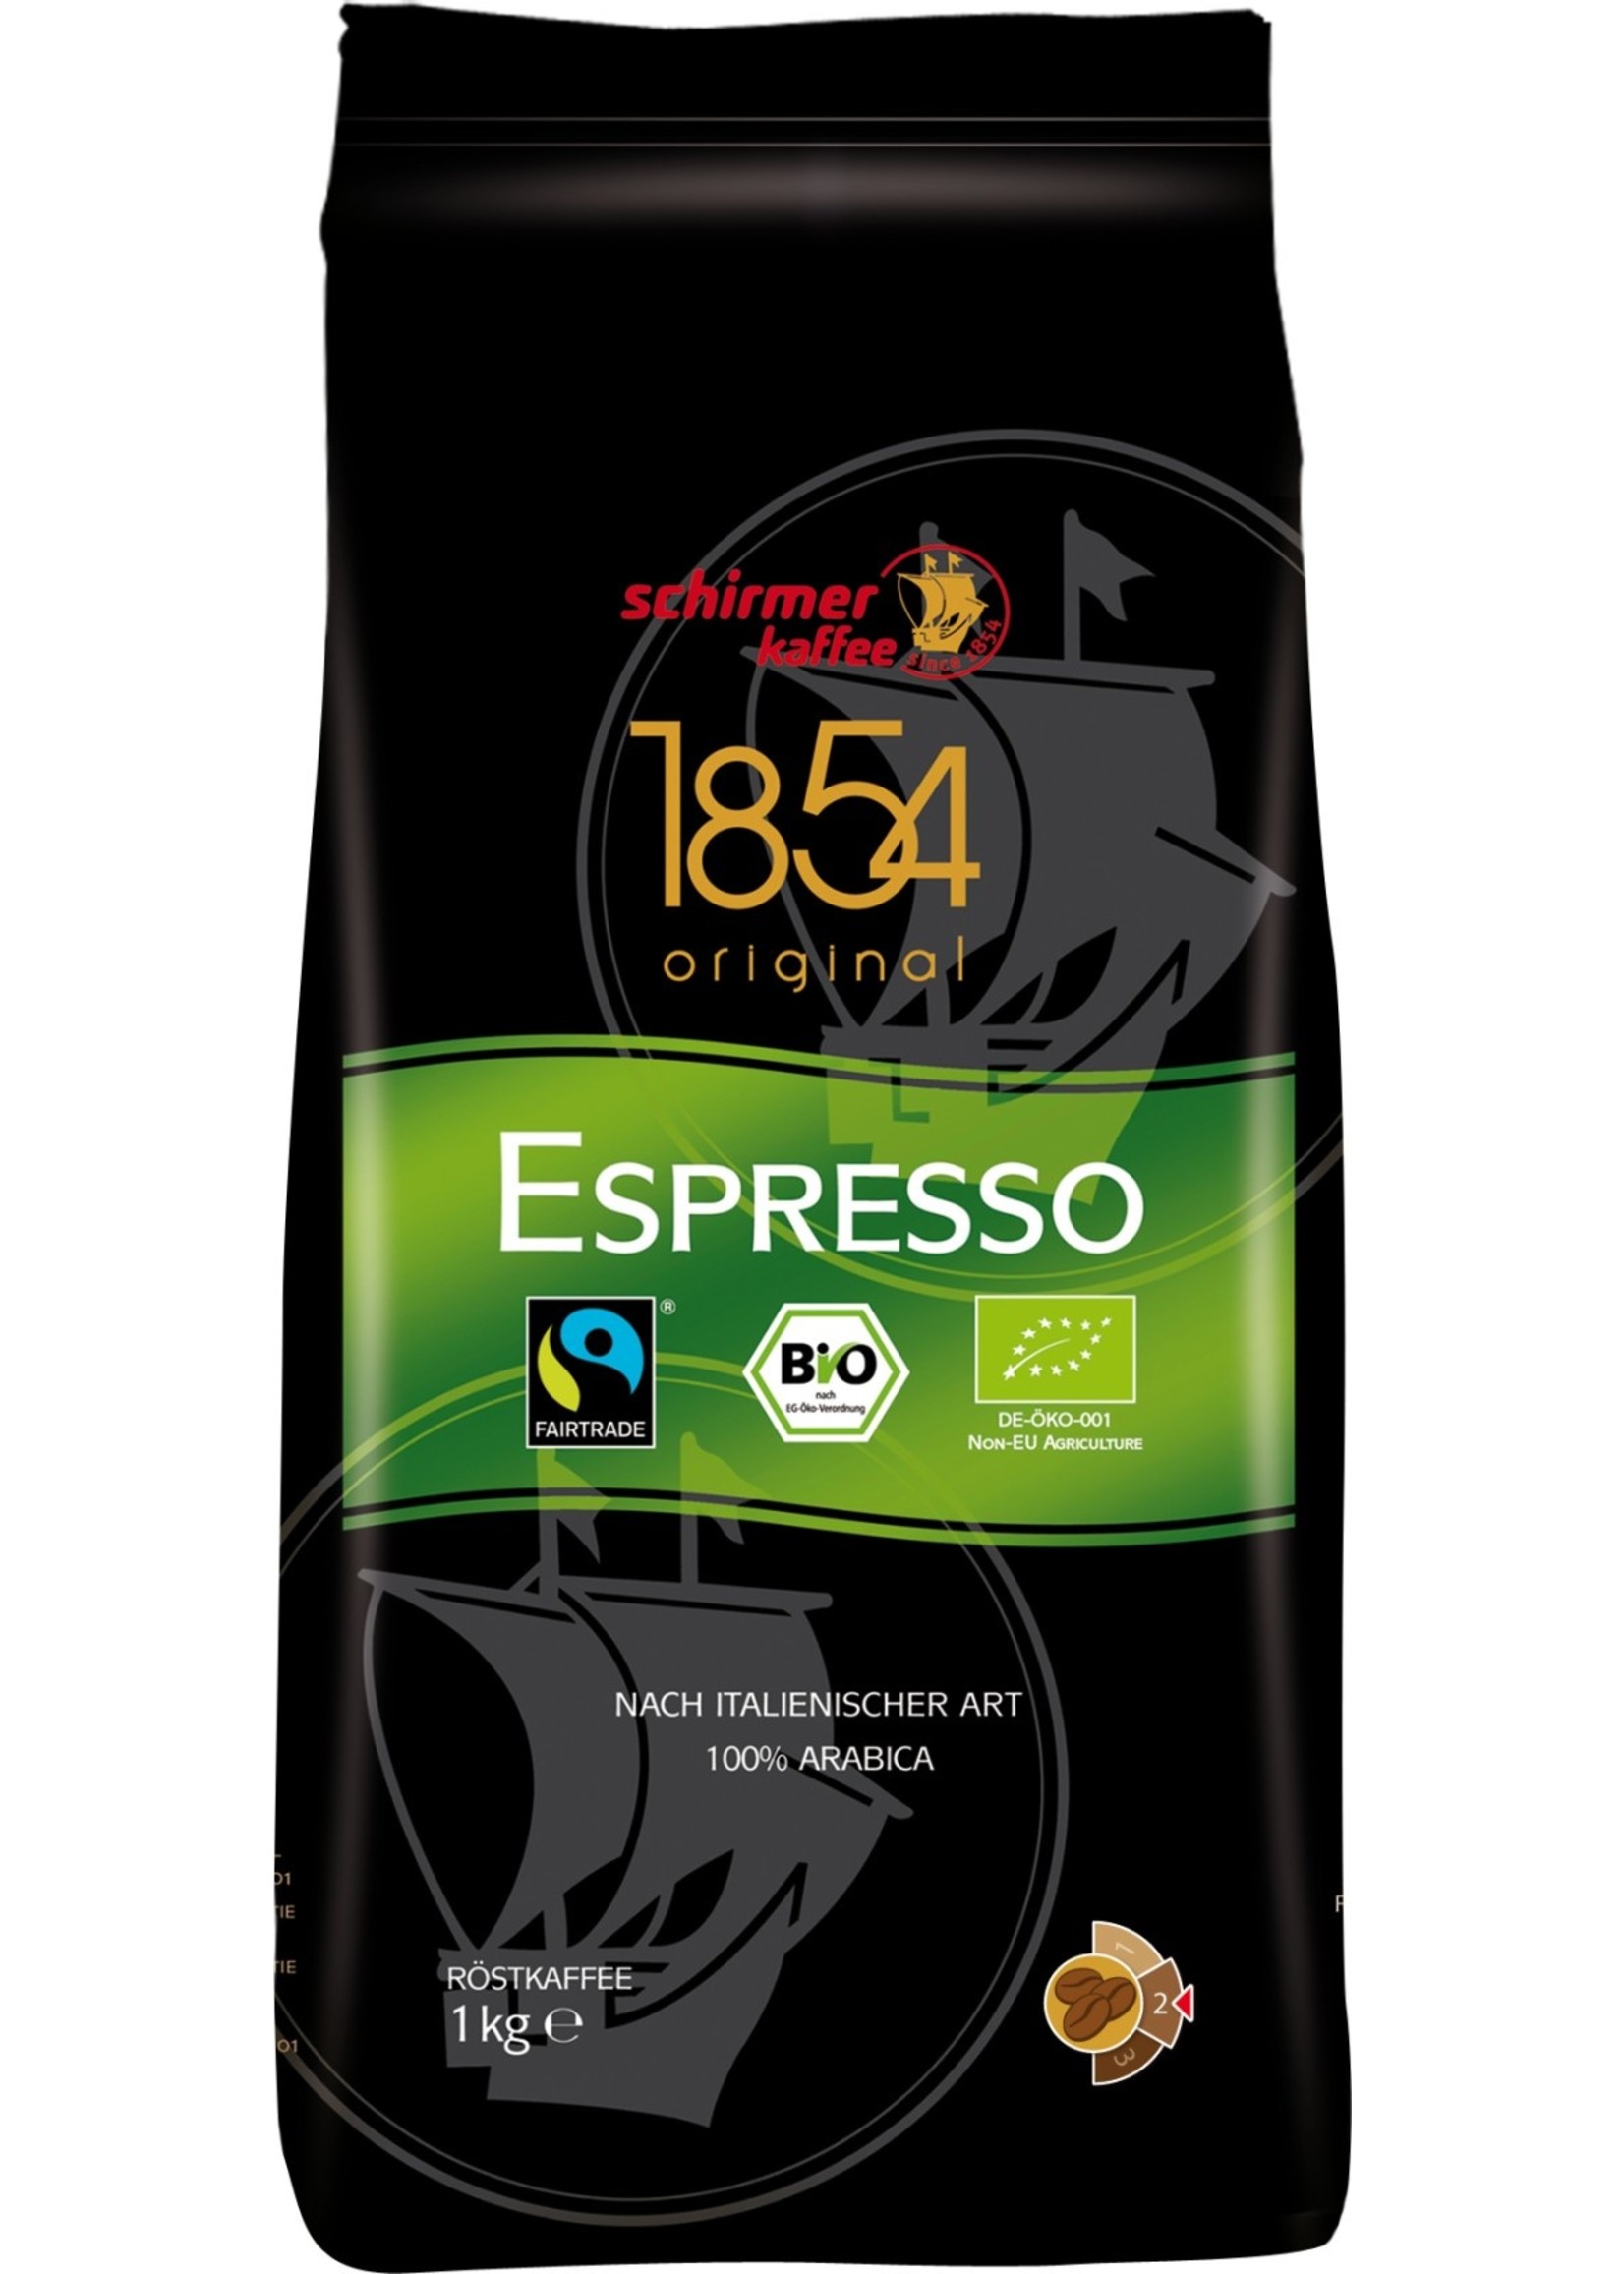 Schirmer Schirmer Bio Espresso 1854 Kaffeebohnen 1000 g